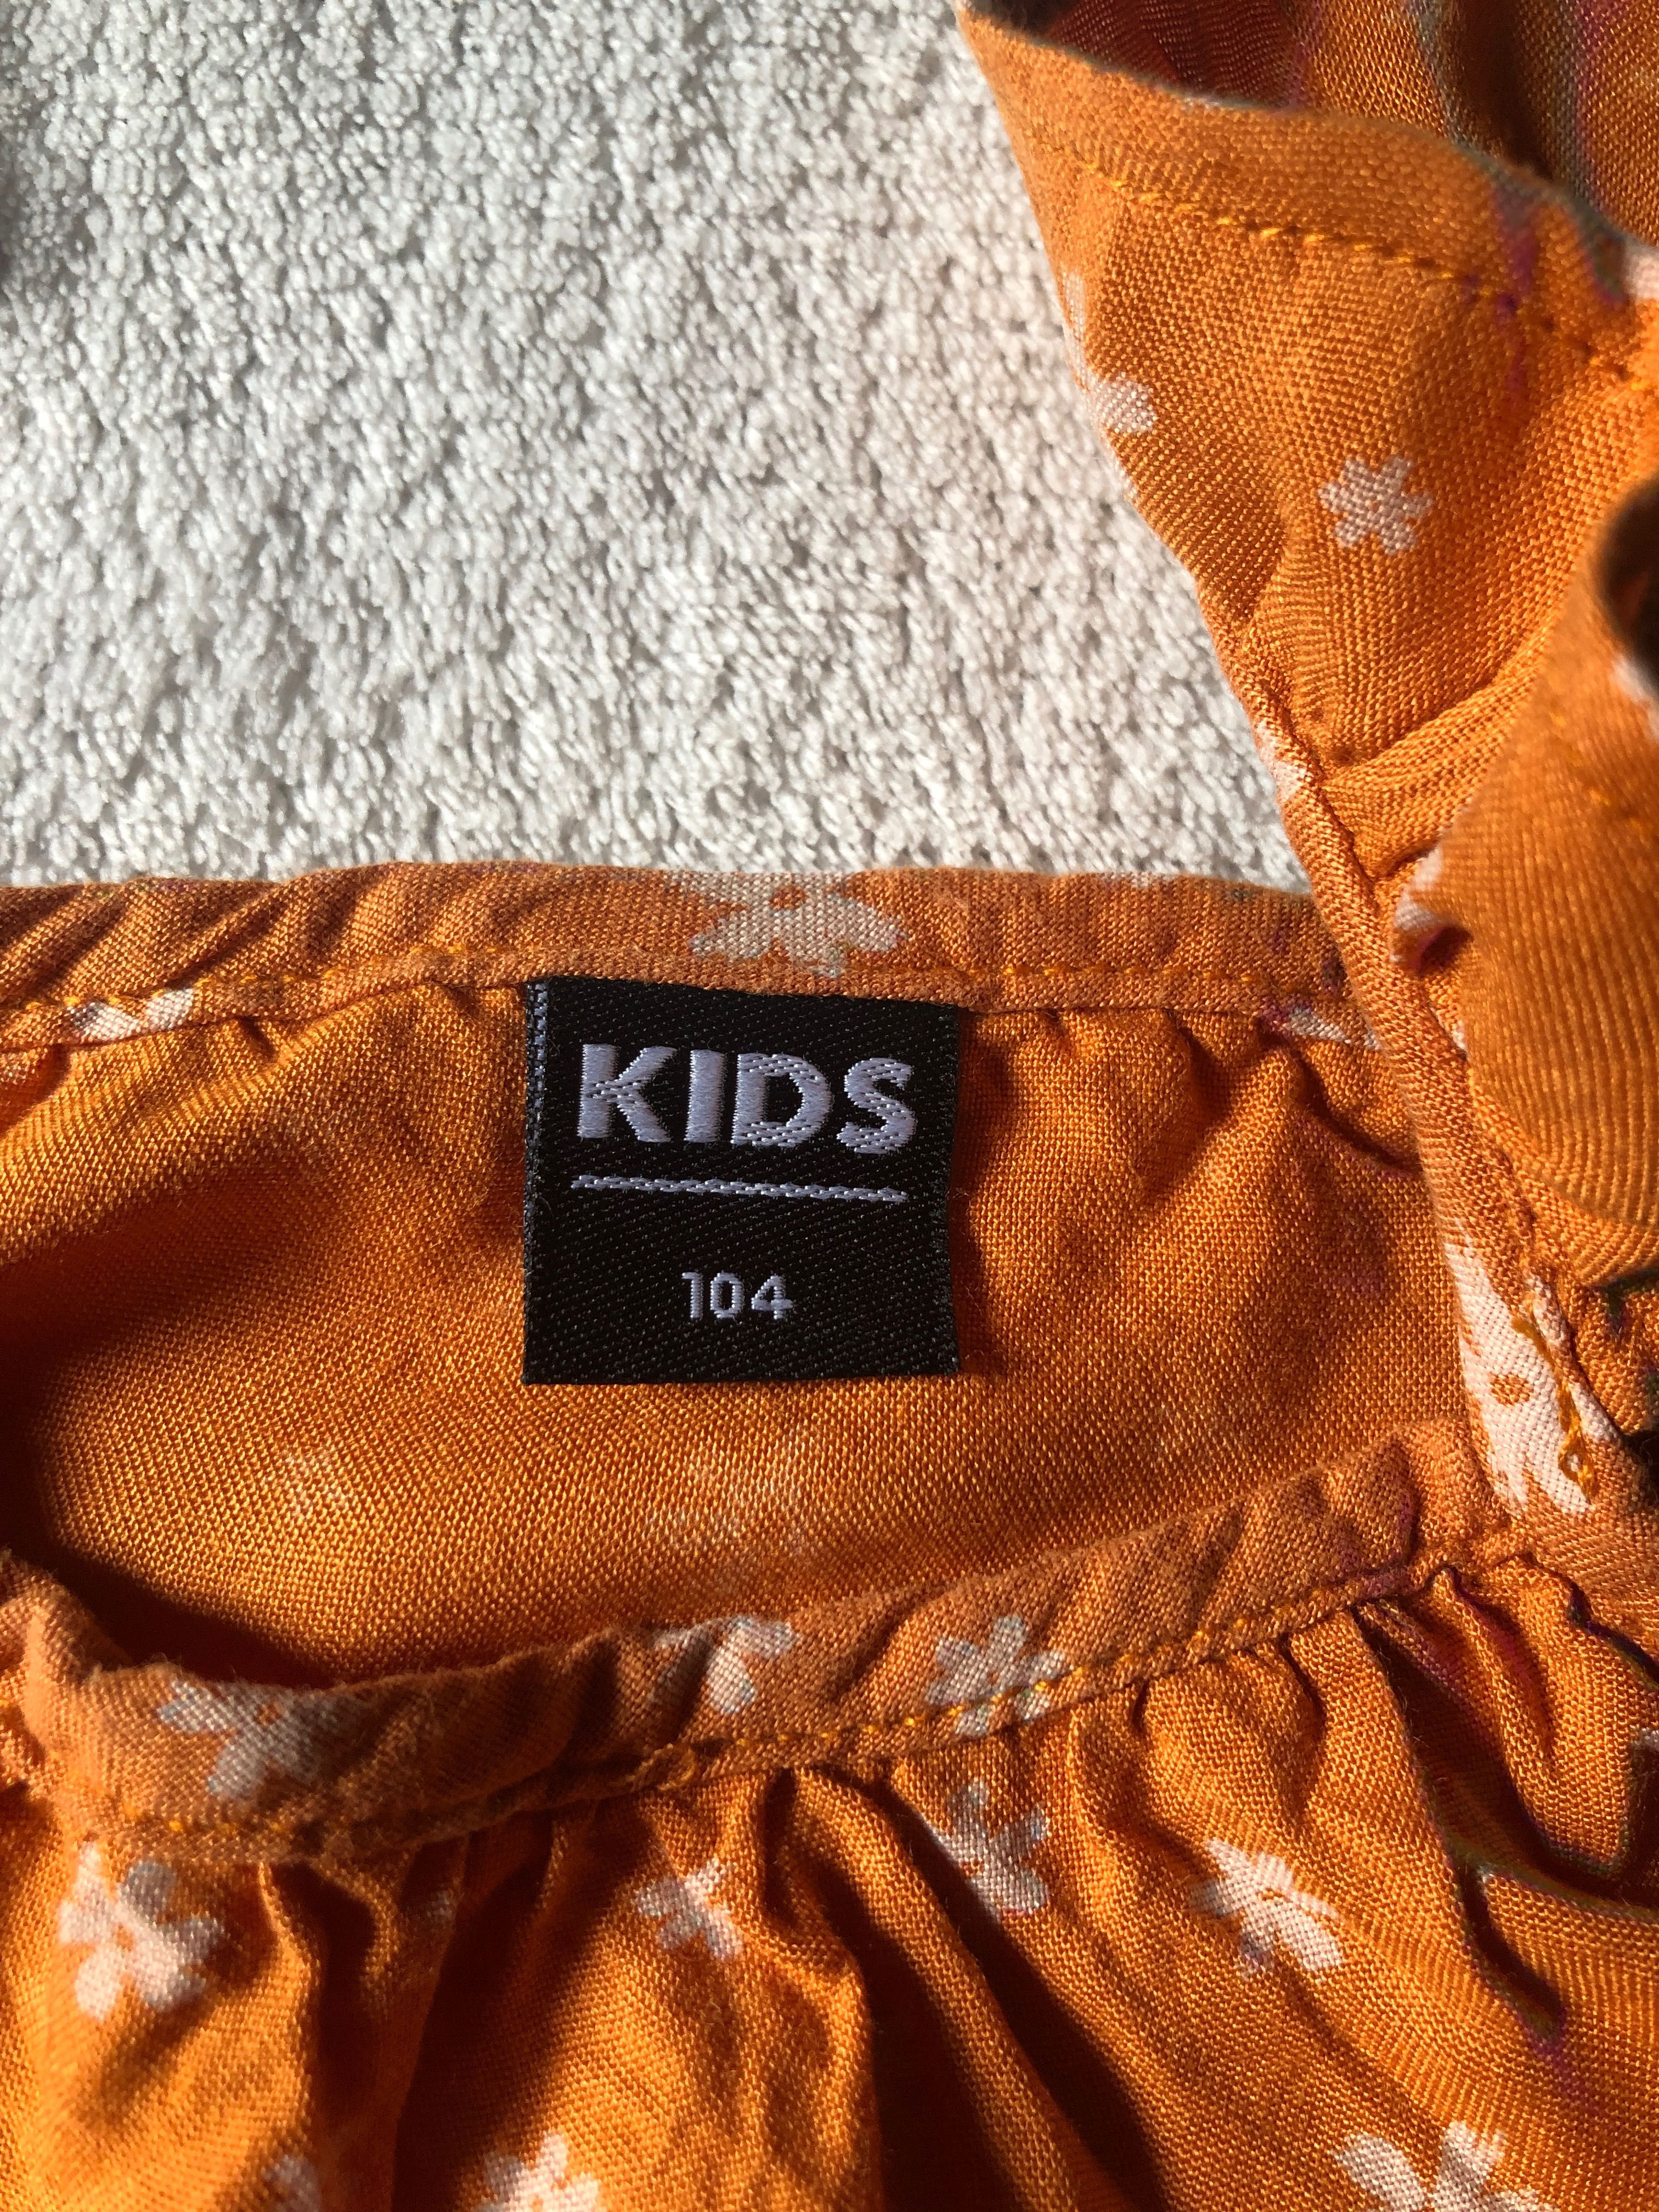 Bluzka na ramiączkach pomarańczowa dla dziewczynki, roz 104, Kids